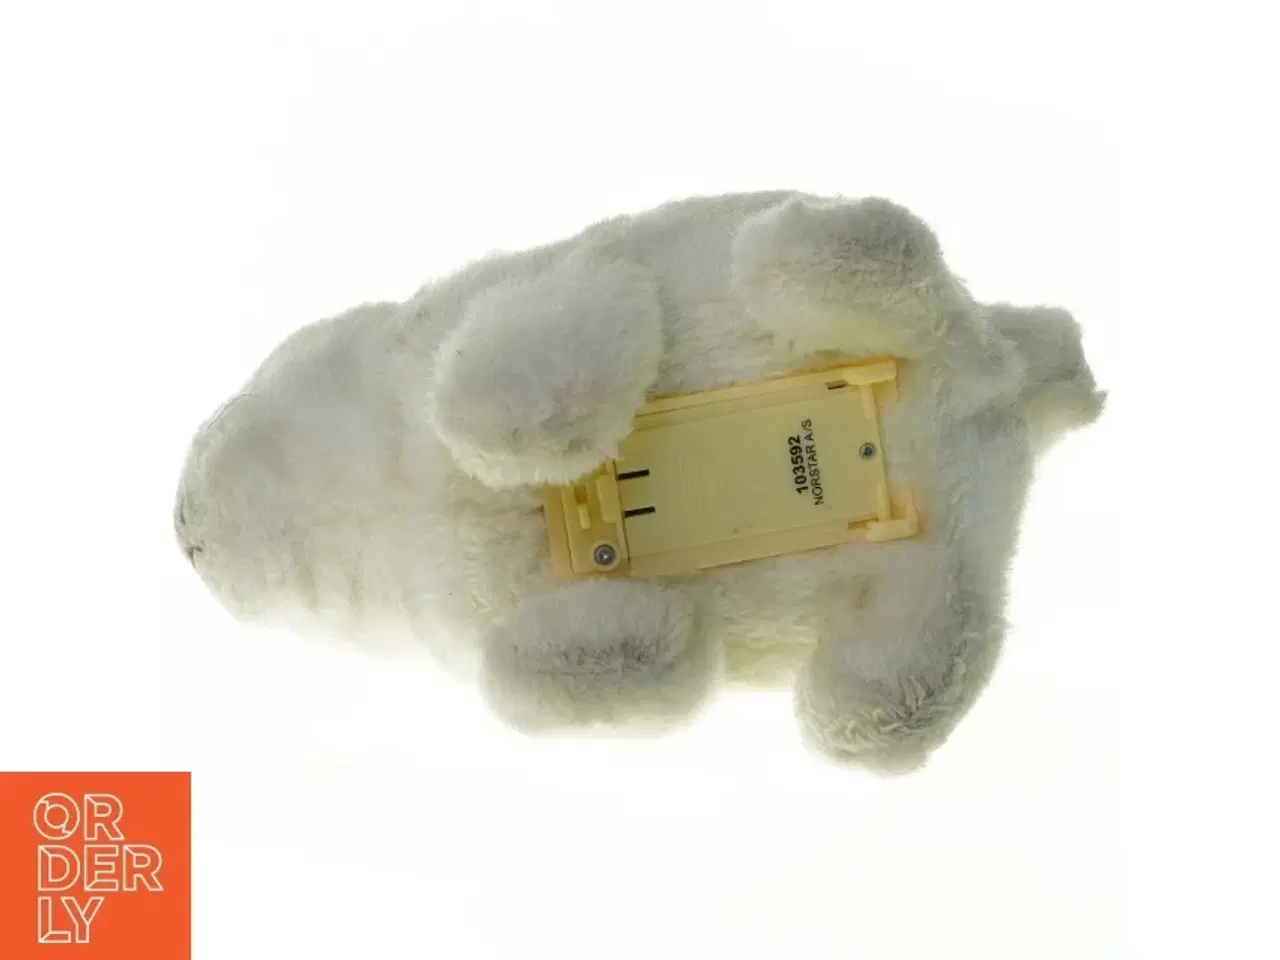 Billede 3 - Kanin bamse med elektronik fra Norstar (str. 20 x 13 cm)